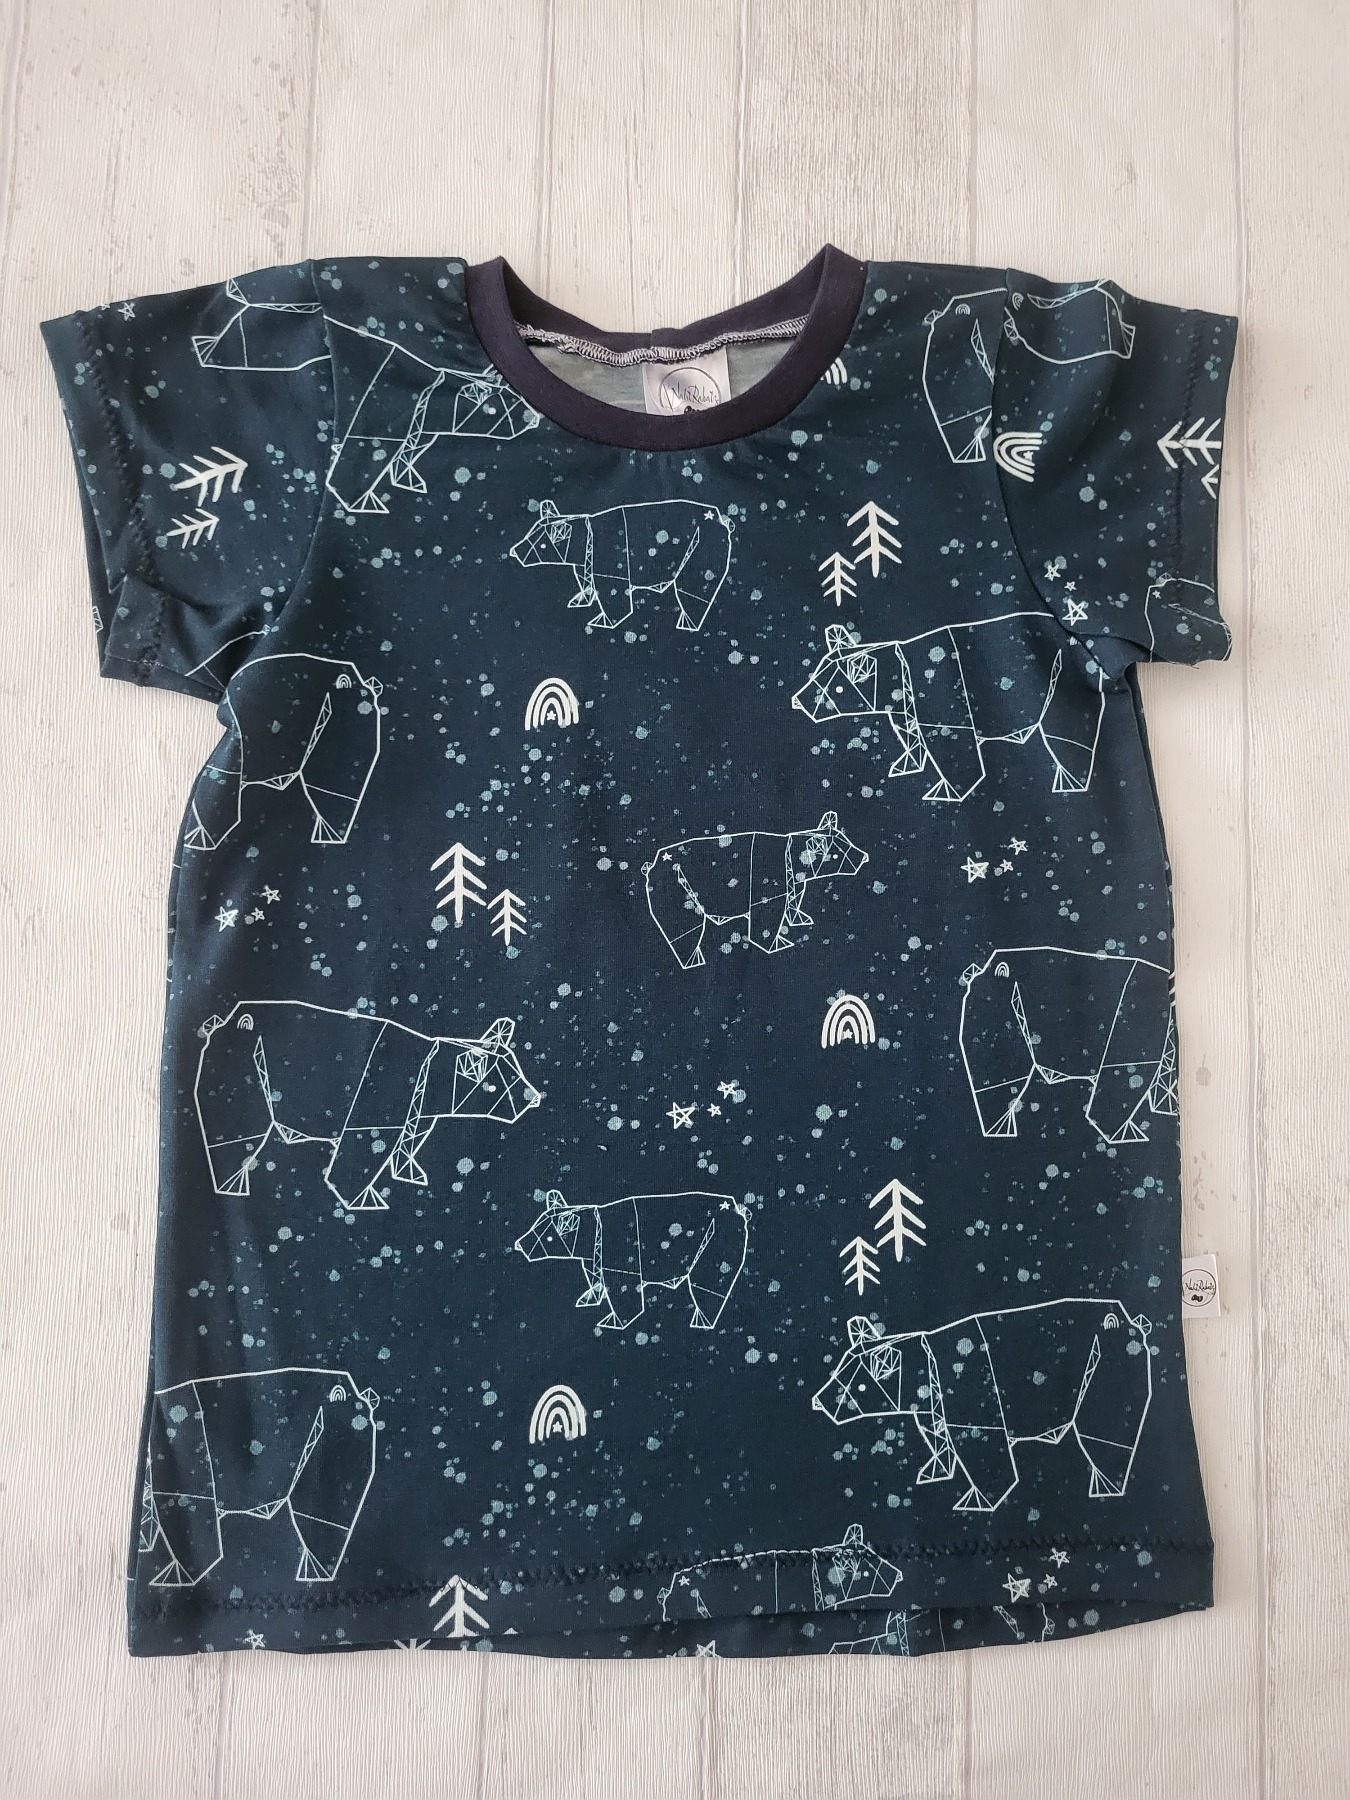 Sofortkauf Handmade T-Shirt kurzarm Bären petrol Gr. 128 von NahtRabatz